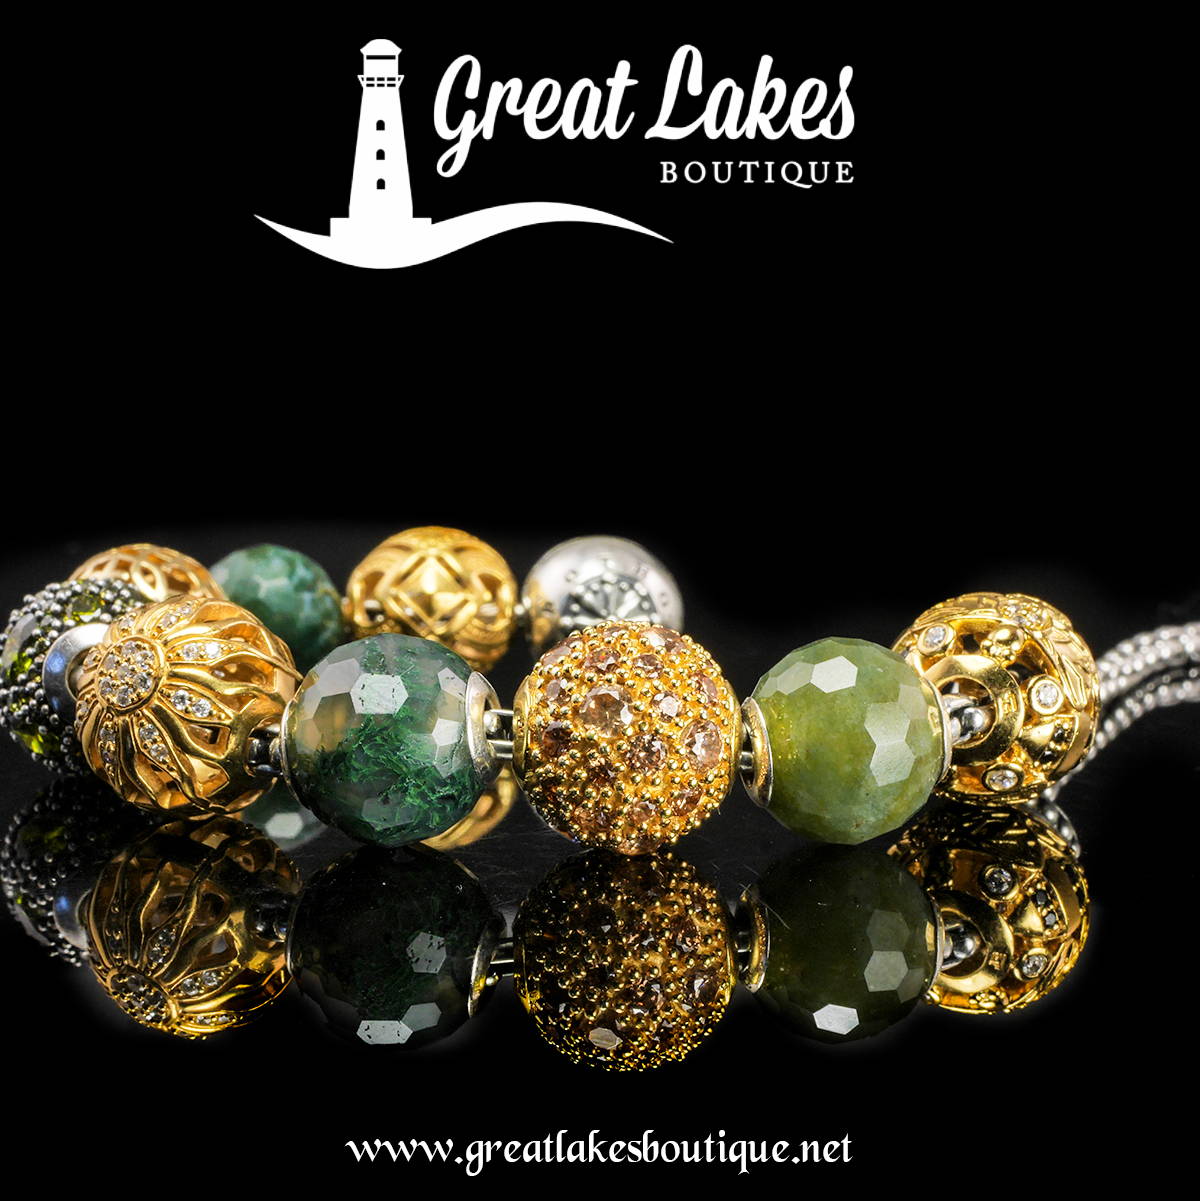 Thomas Sabo Karma Beads - Great Lakes Boutique